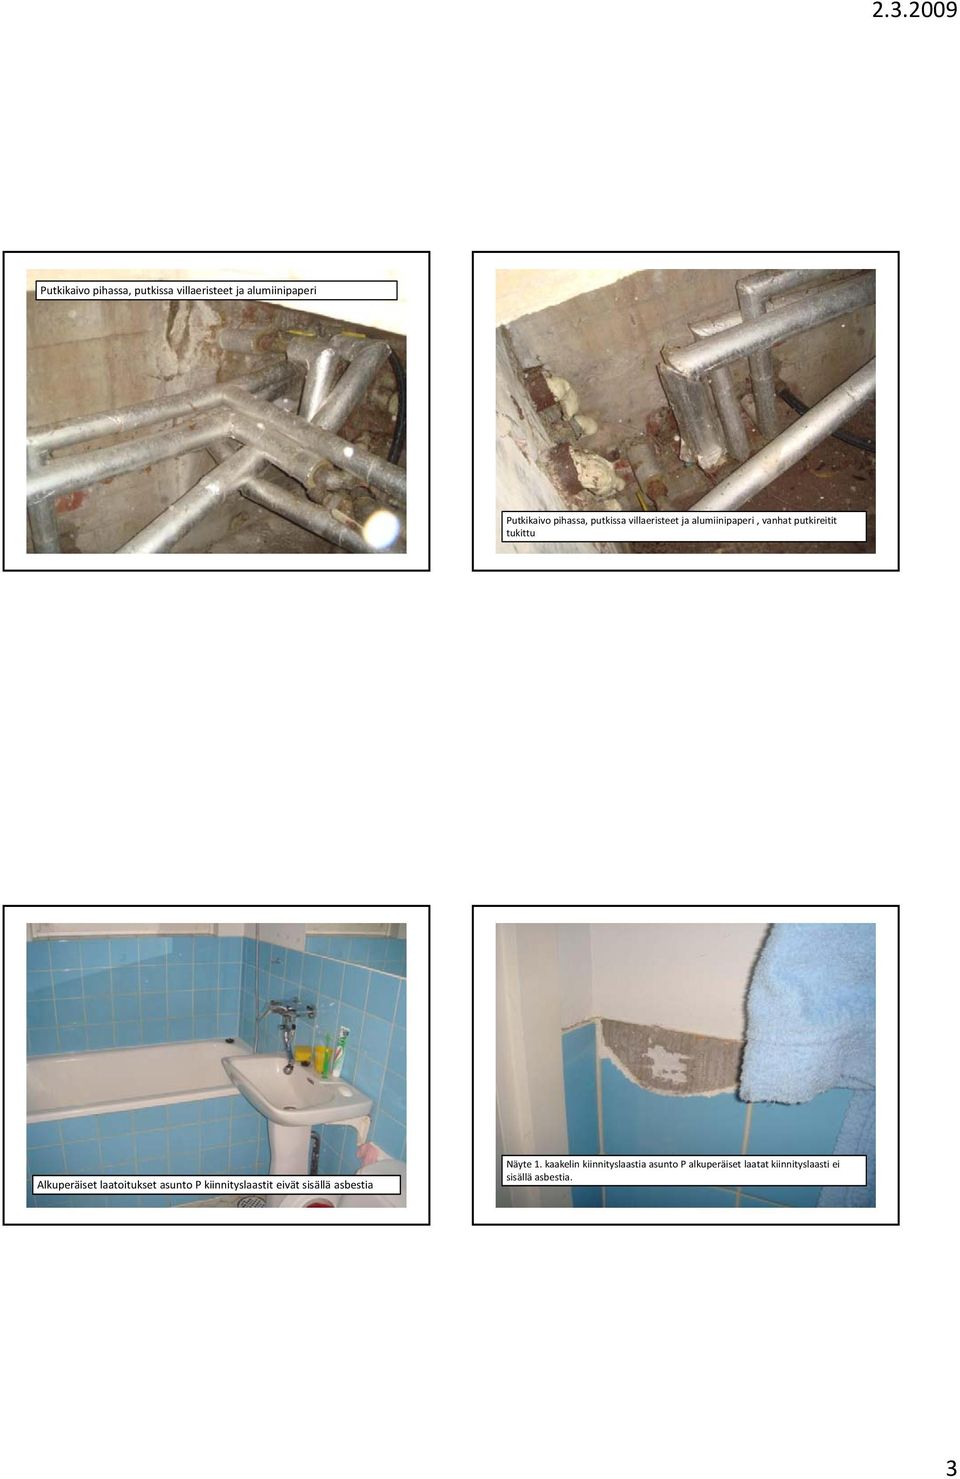 Alkuperäiset laatoitukset asunto P kiinnityslaastit eivät sisällä asbestia Näyte 1.